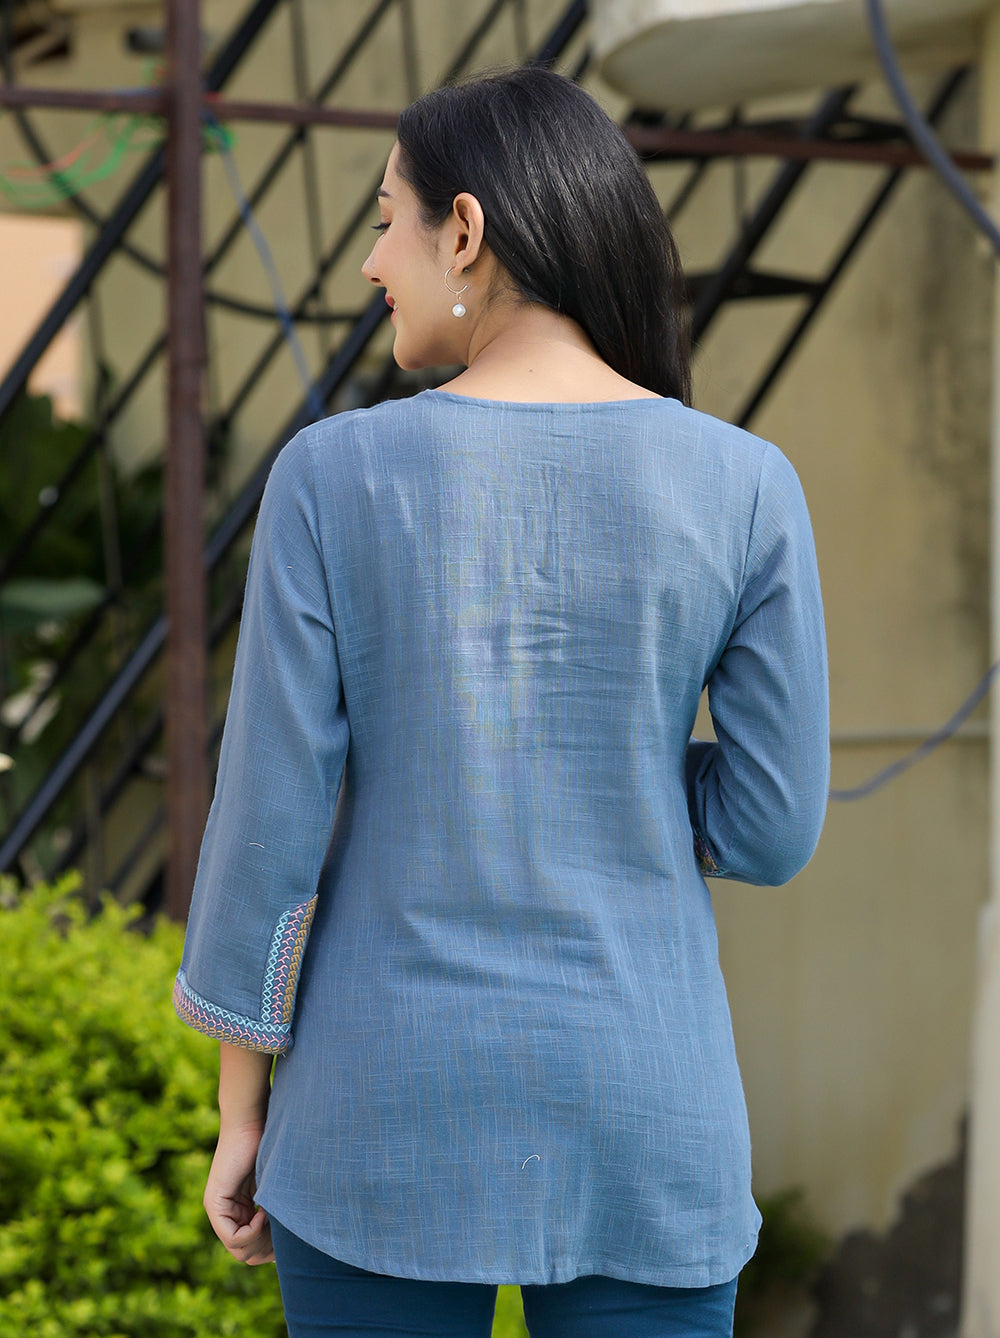 Women's Light Blue Embroidered Cotton Top - KAAJH